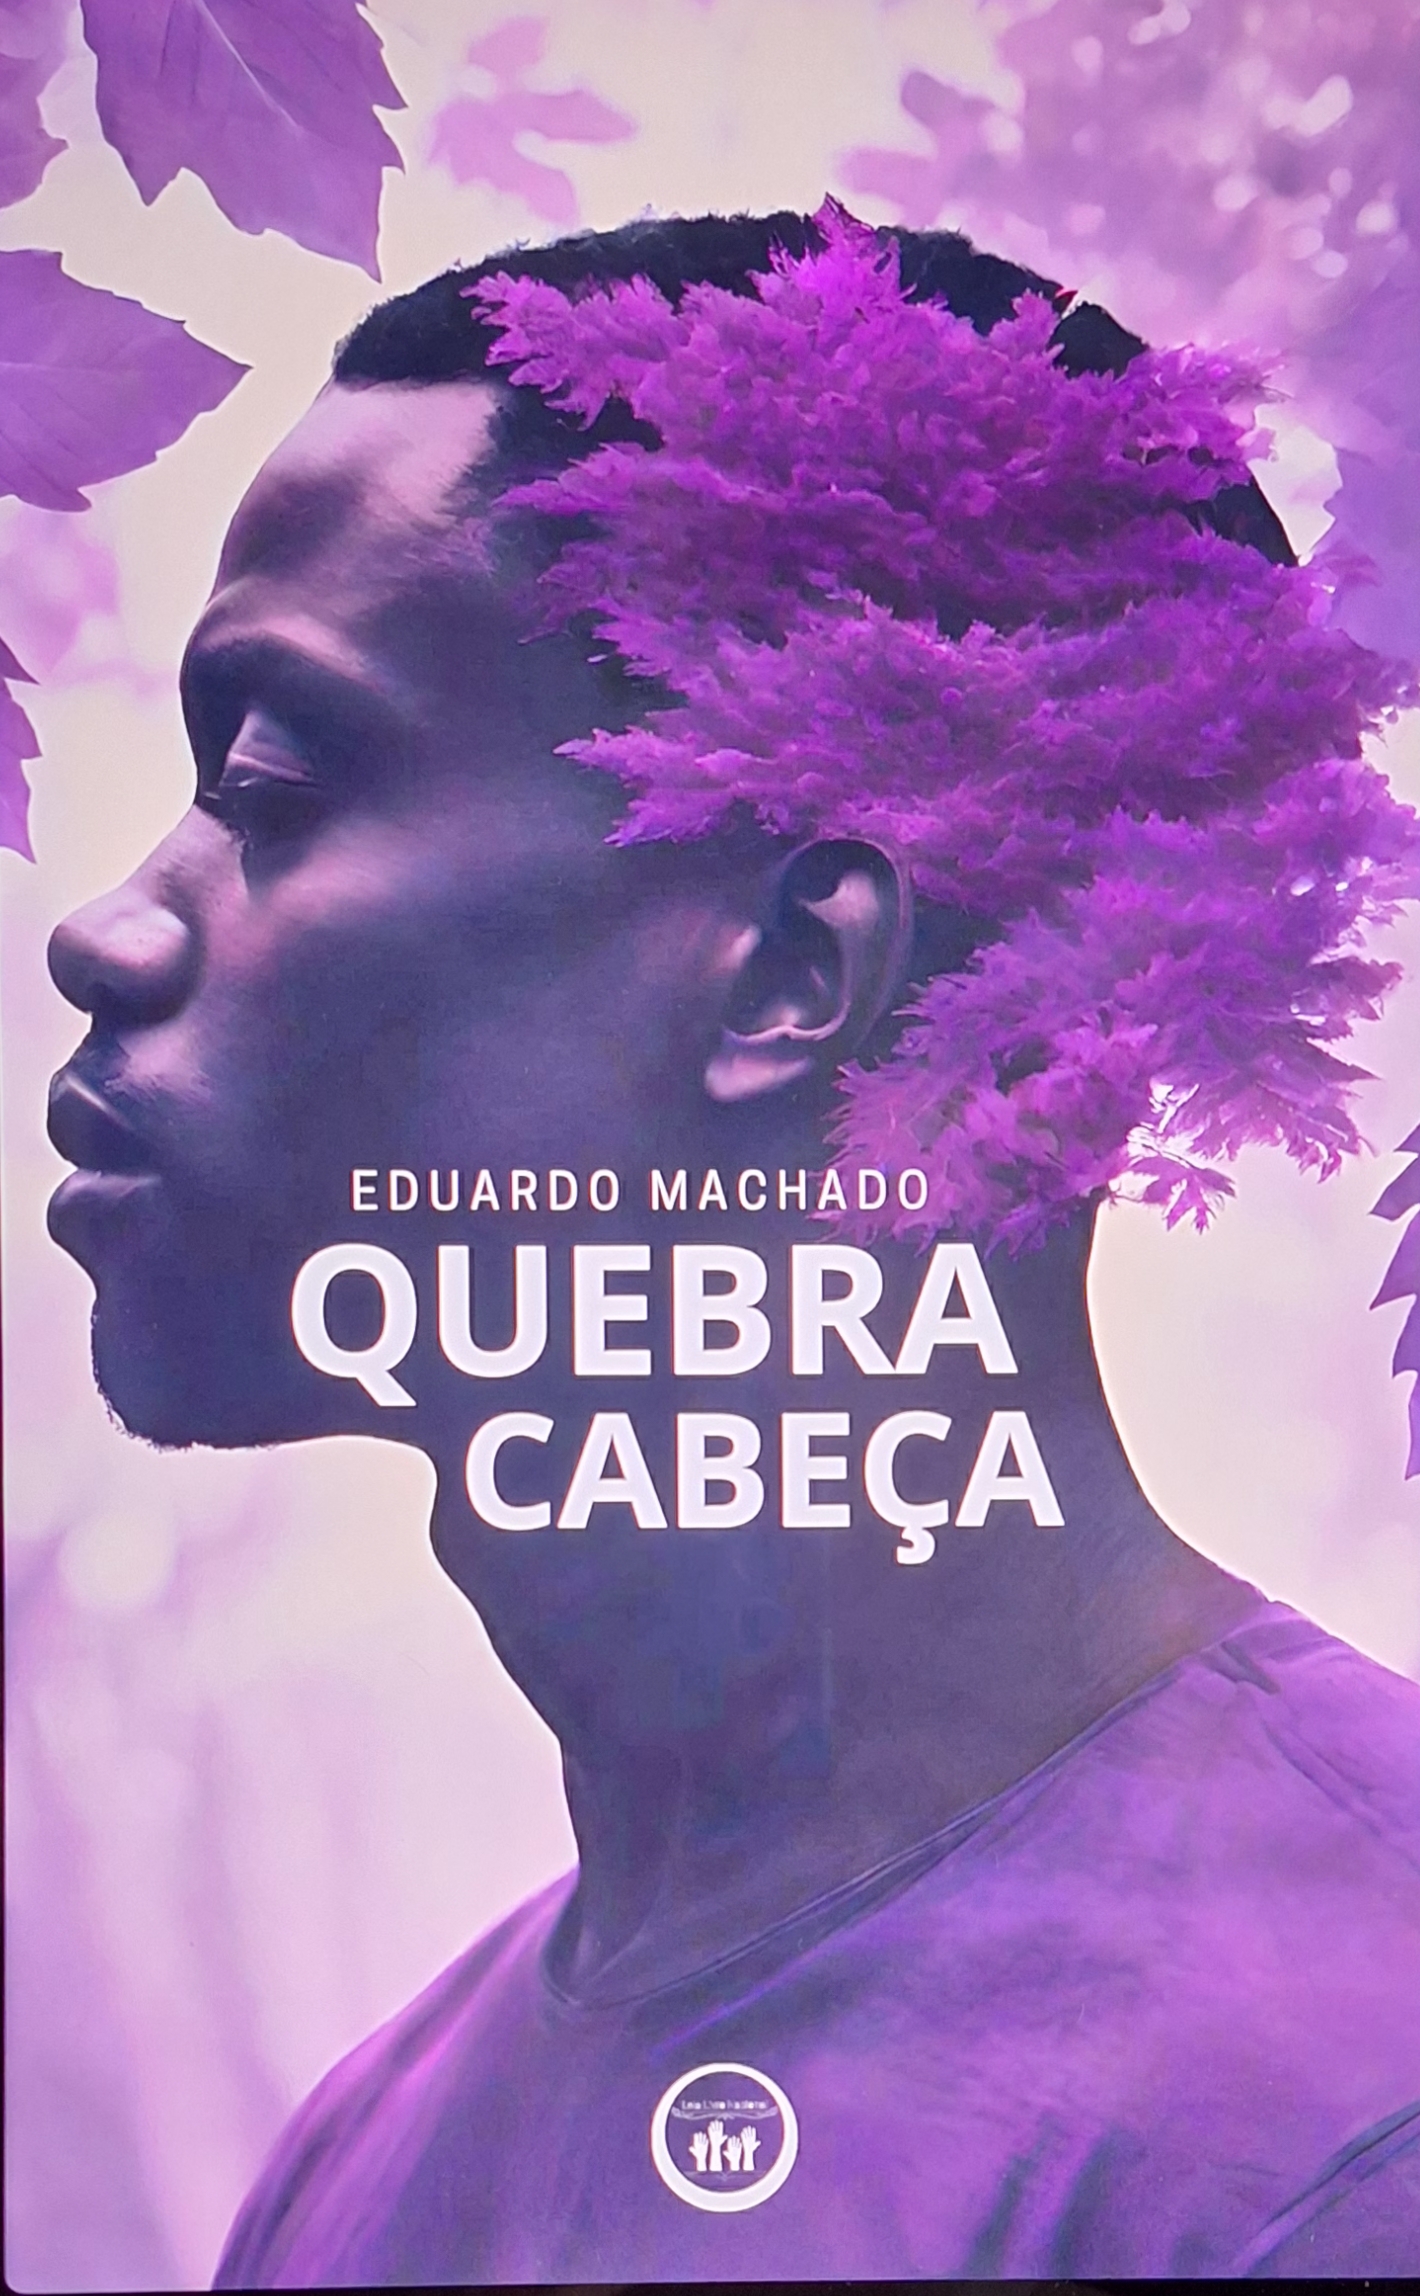 Capa do conto Quebra Cabeça, de Eduardo Machado pela Editira Leia Livro Nacional